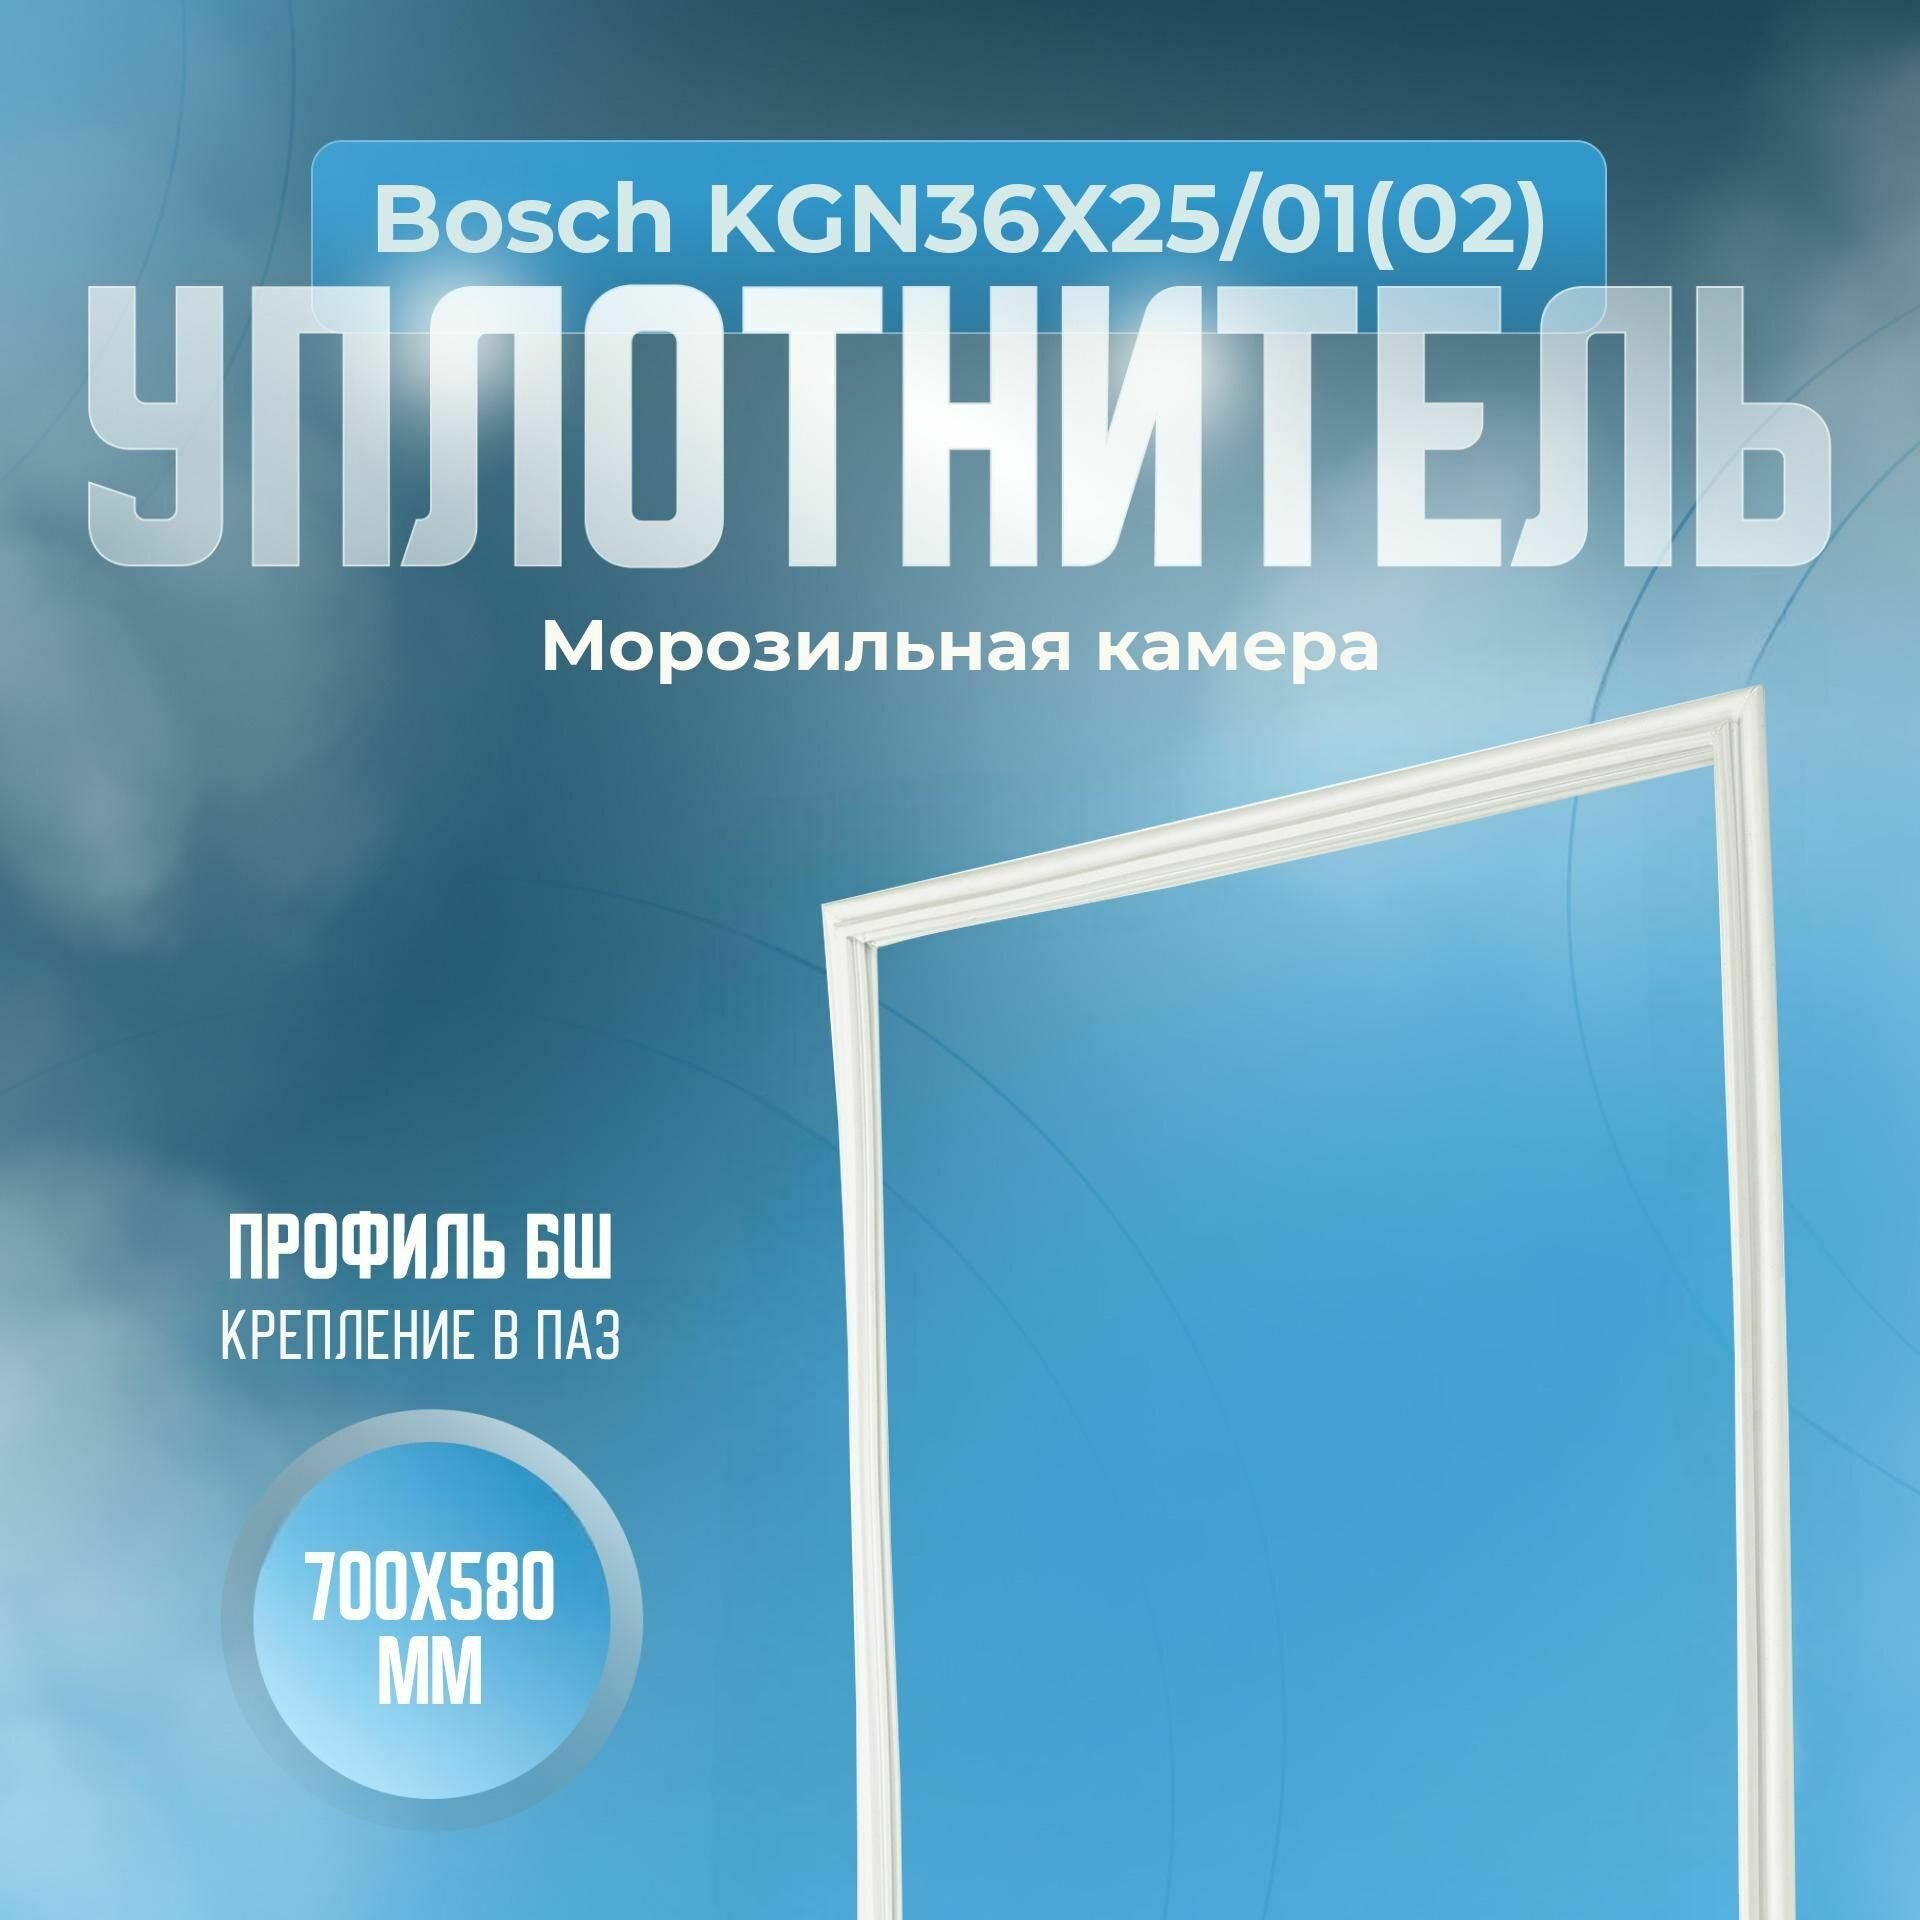 Уплотнитель Bosch KGN36X25/01(02). м. к, Размер - 700x580 мм. БШ